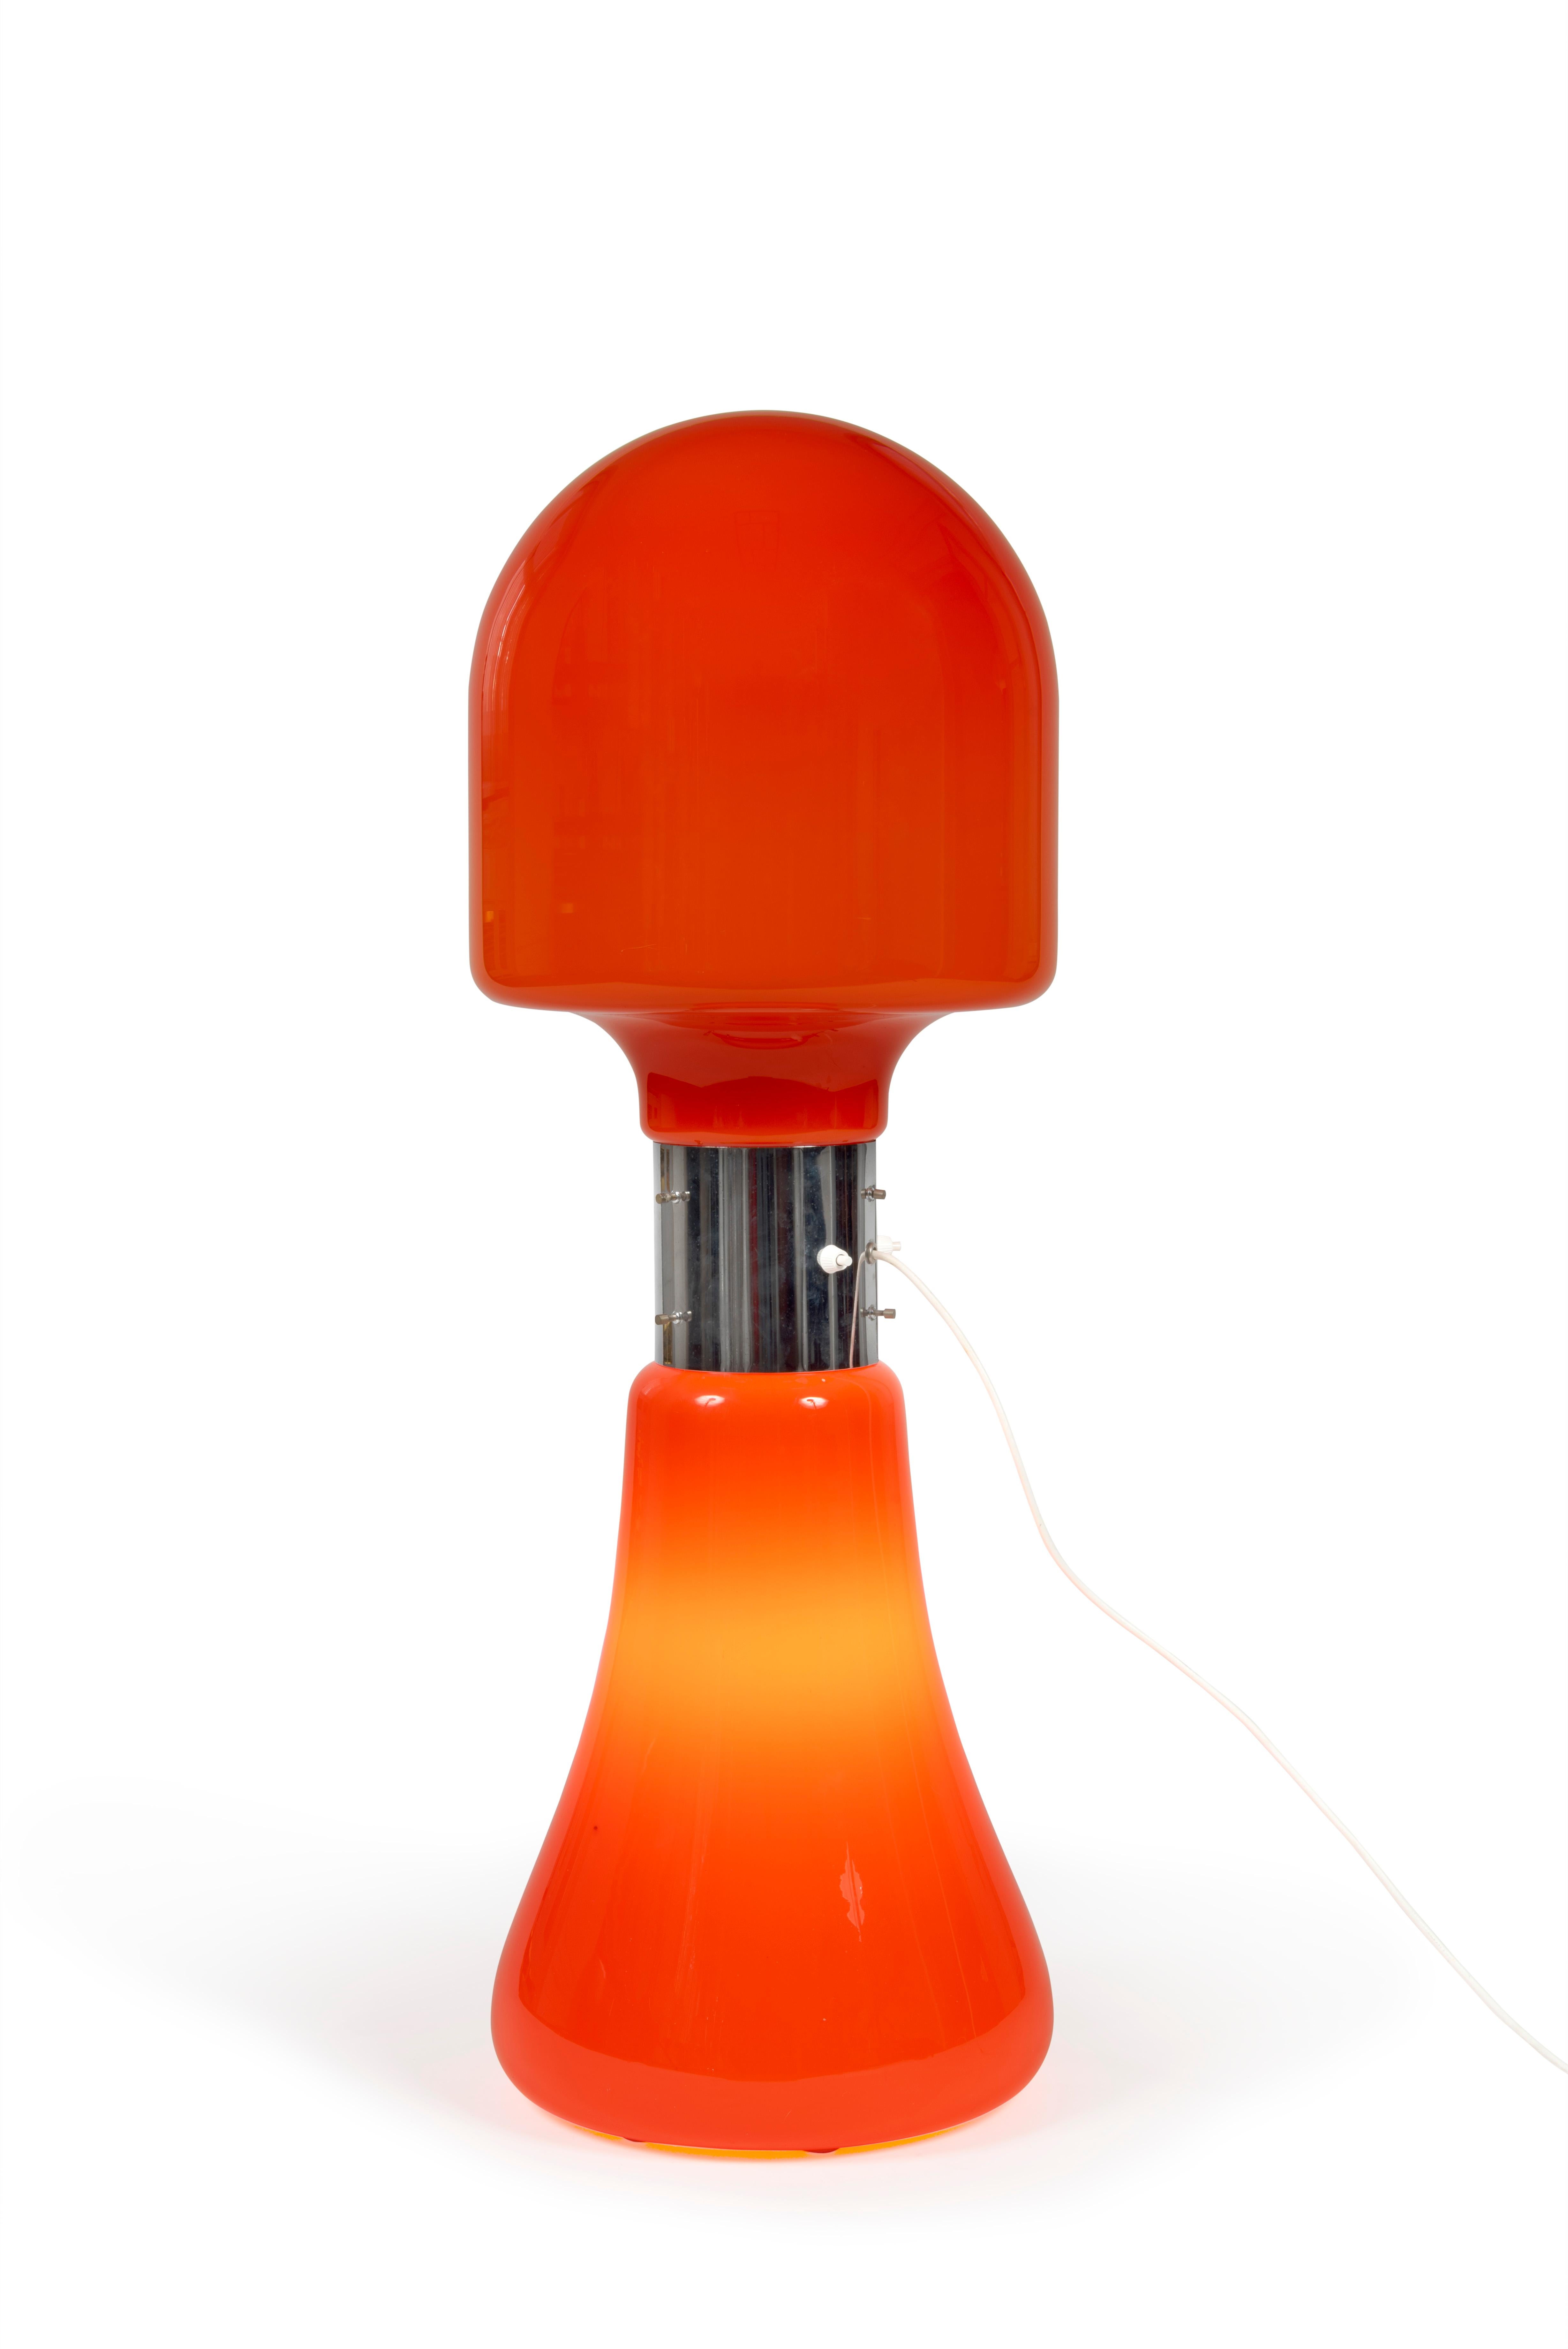 Lampadaire iconique en Opaline de Murano “Birillo” des années 1960, conçu par Carlo Nason pour Mazzega.

Il est réalisé avec une structure chromée et un abat-jour en forme de méduse.

Interrupteur d’origine à deux positions d’éclairage.

Dimensions